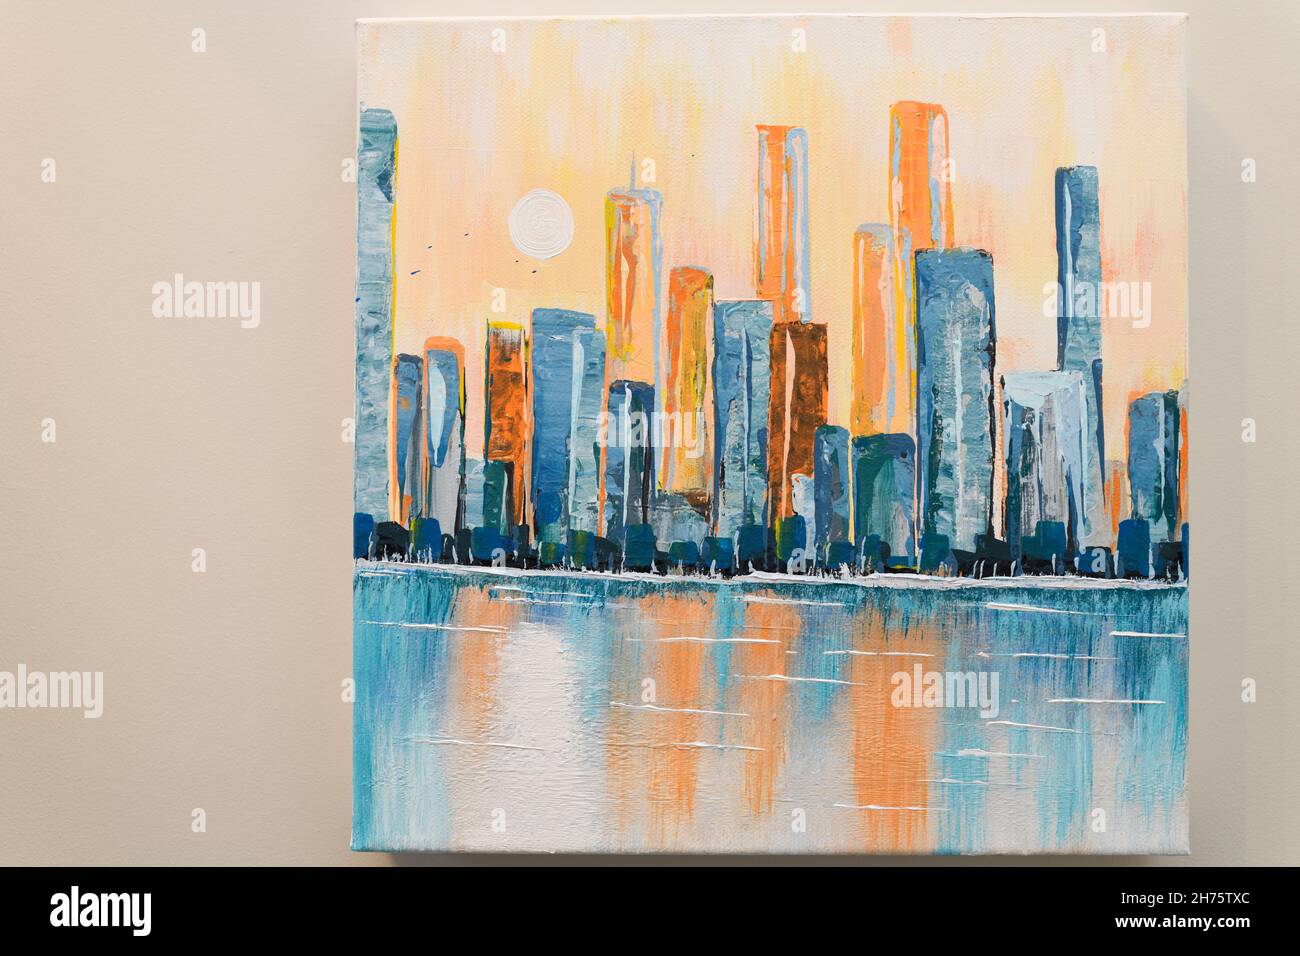 Pintura acrílica abstracta sobre lienzo del horizonte urbano con torres de gran altura reflejadas en el agua y el sol Foto de stock